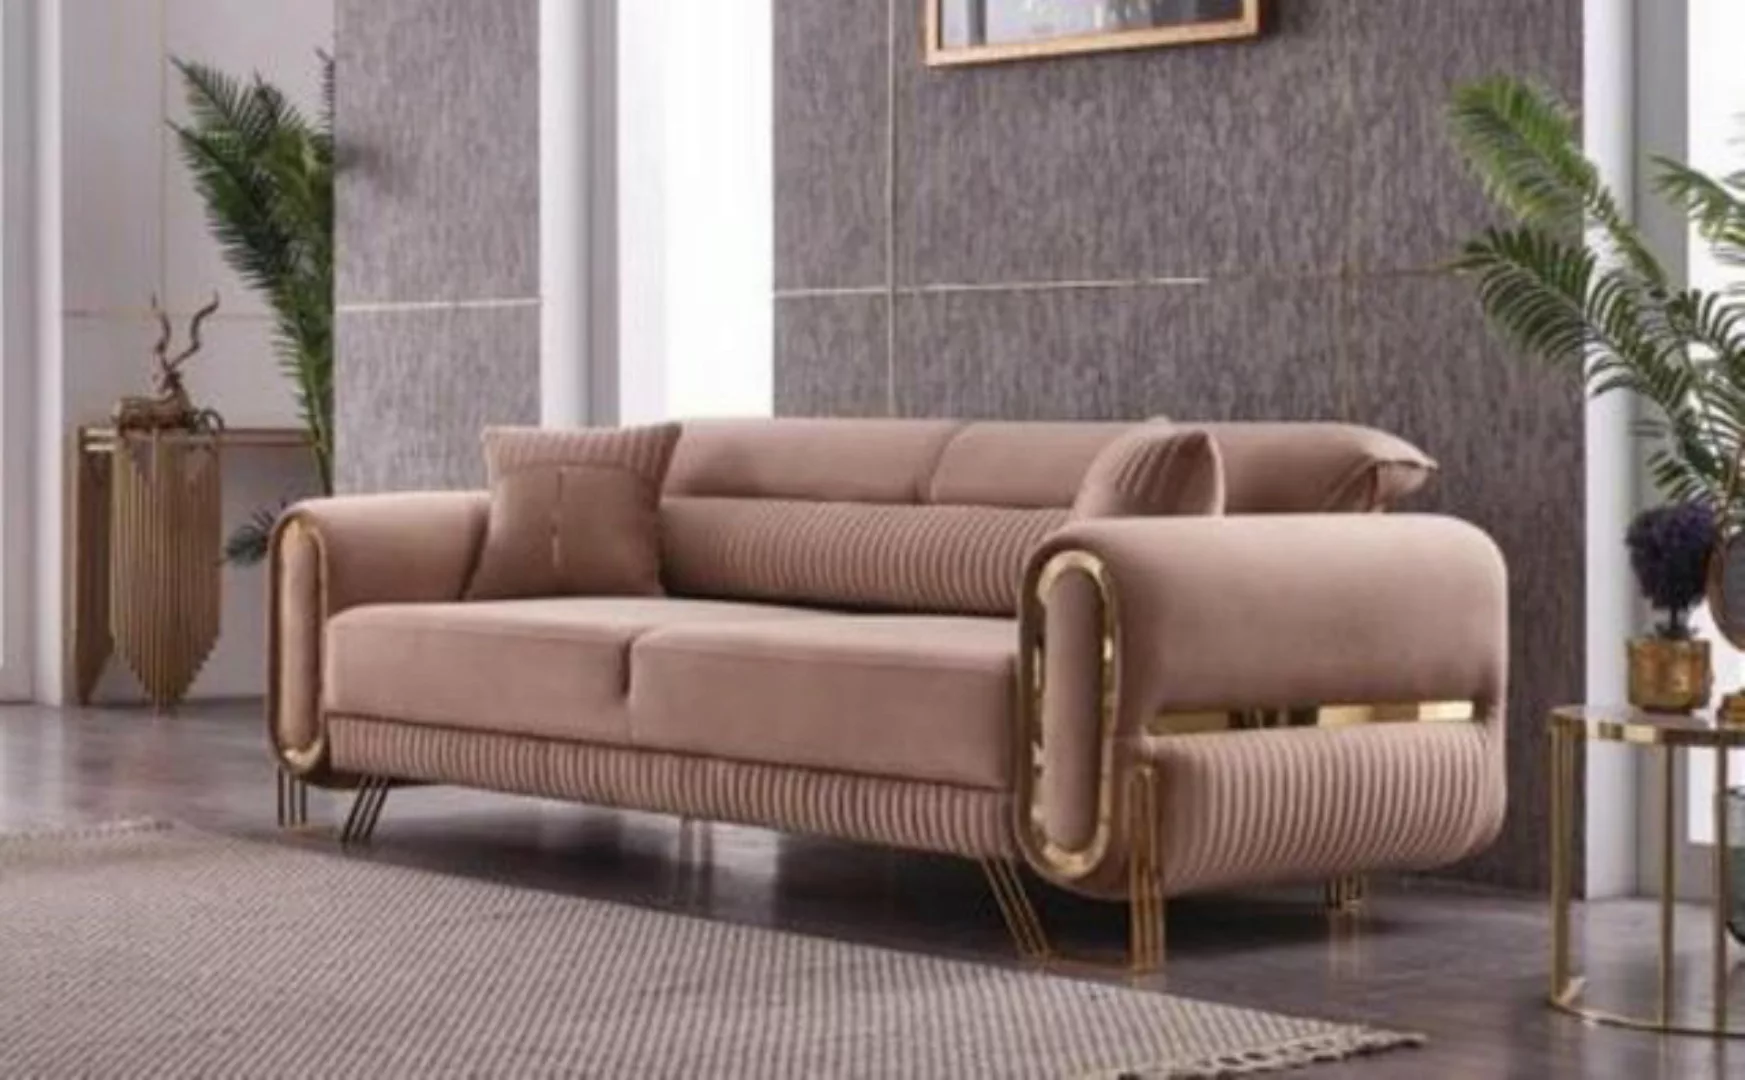 JVmoebel 3-Sitzer Sofa 3 Sitzer Wohnzimmer Polster Textil Dreisitzer Möbel günstig online kaufen